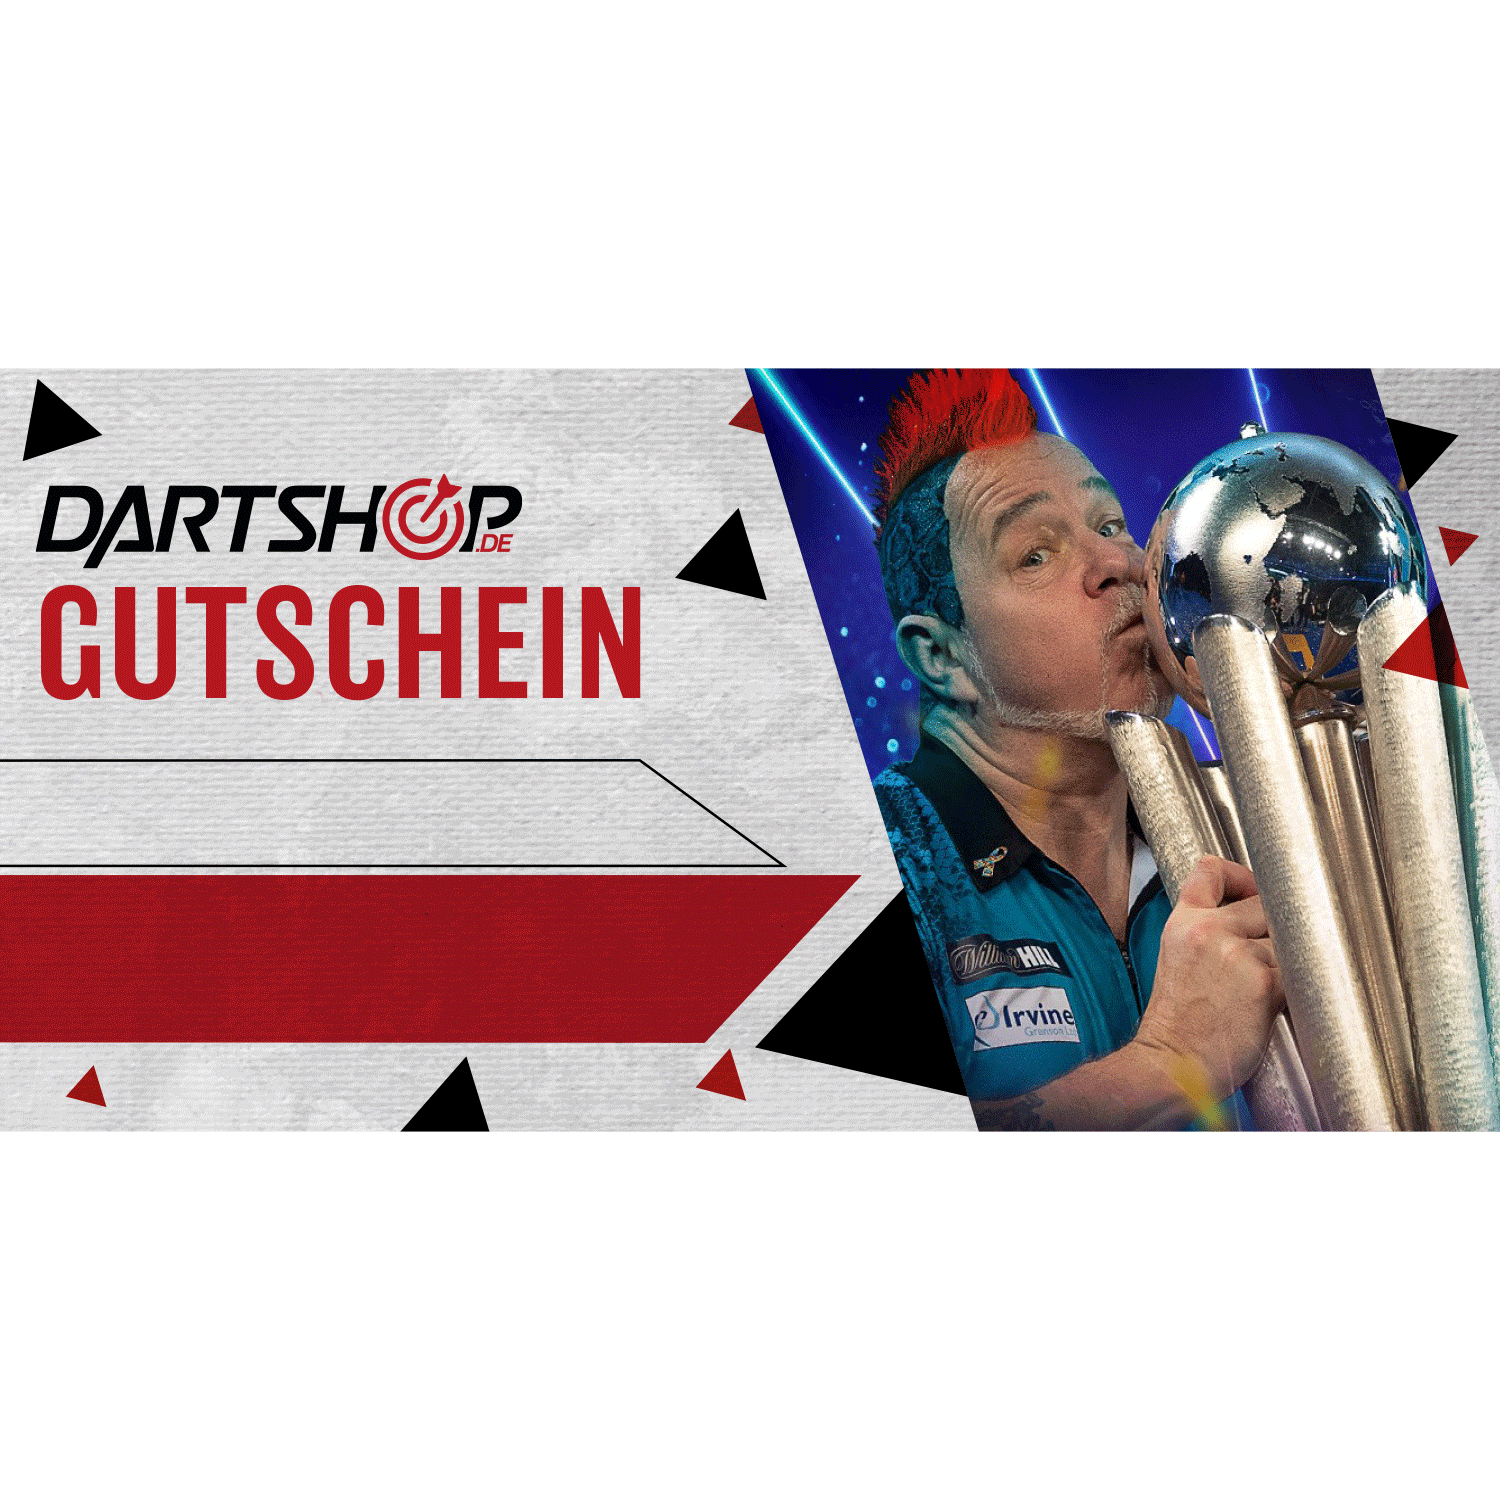 Dartshop.de Gutschein